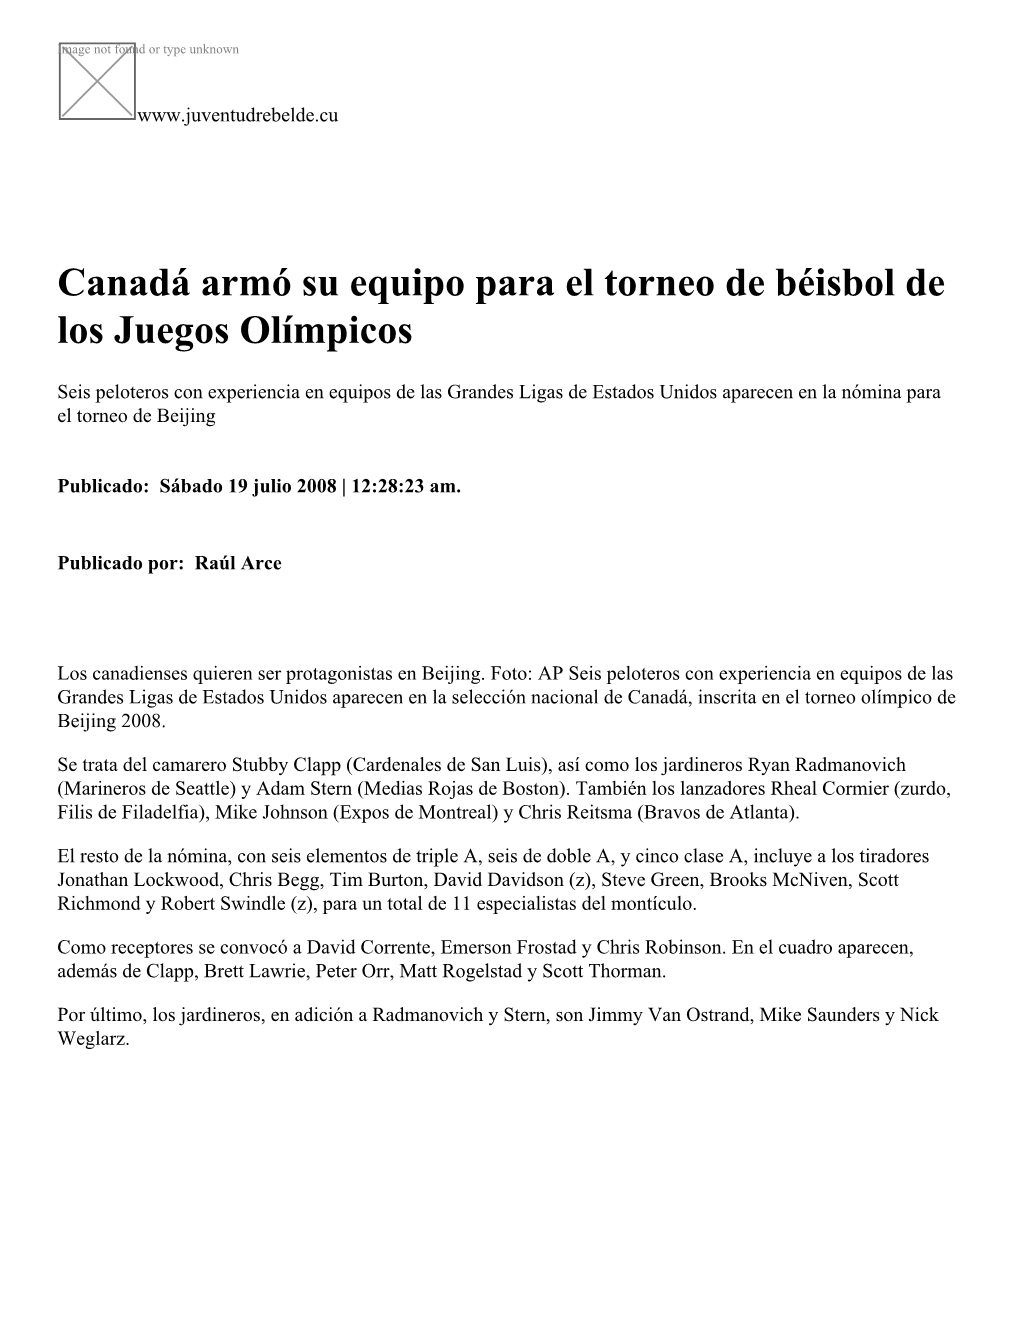 Canadá Armó Su Equipo Para El Torneo De Béisbol De Los Juegos Olímpicos